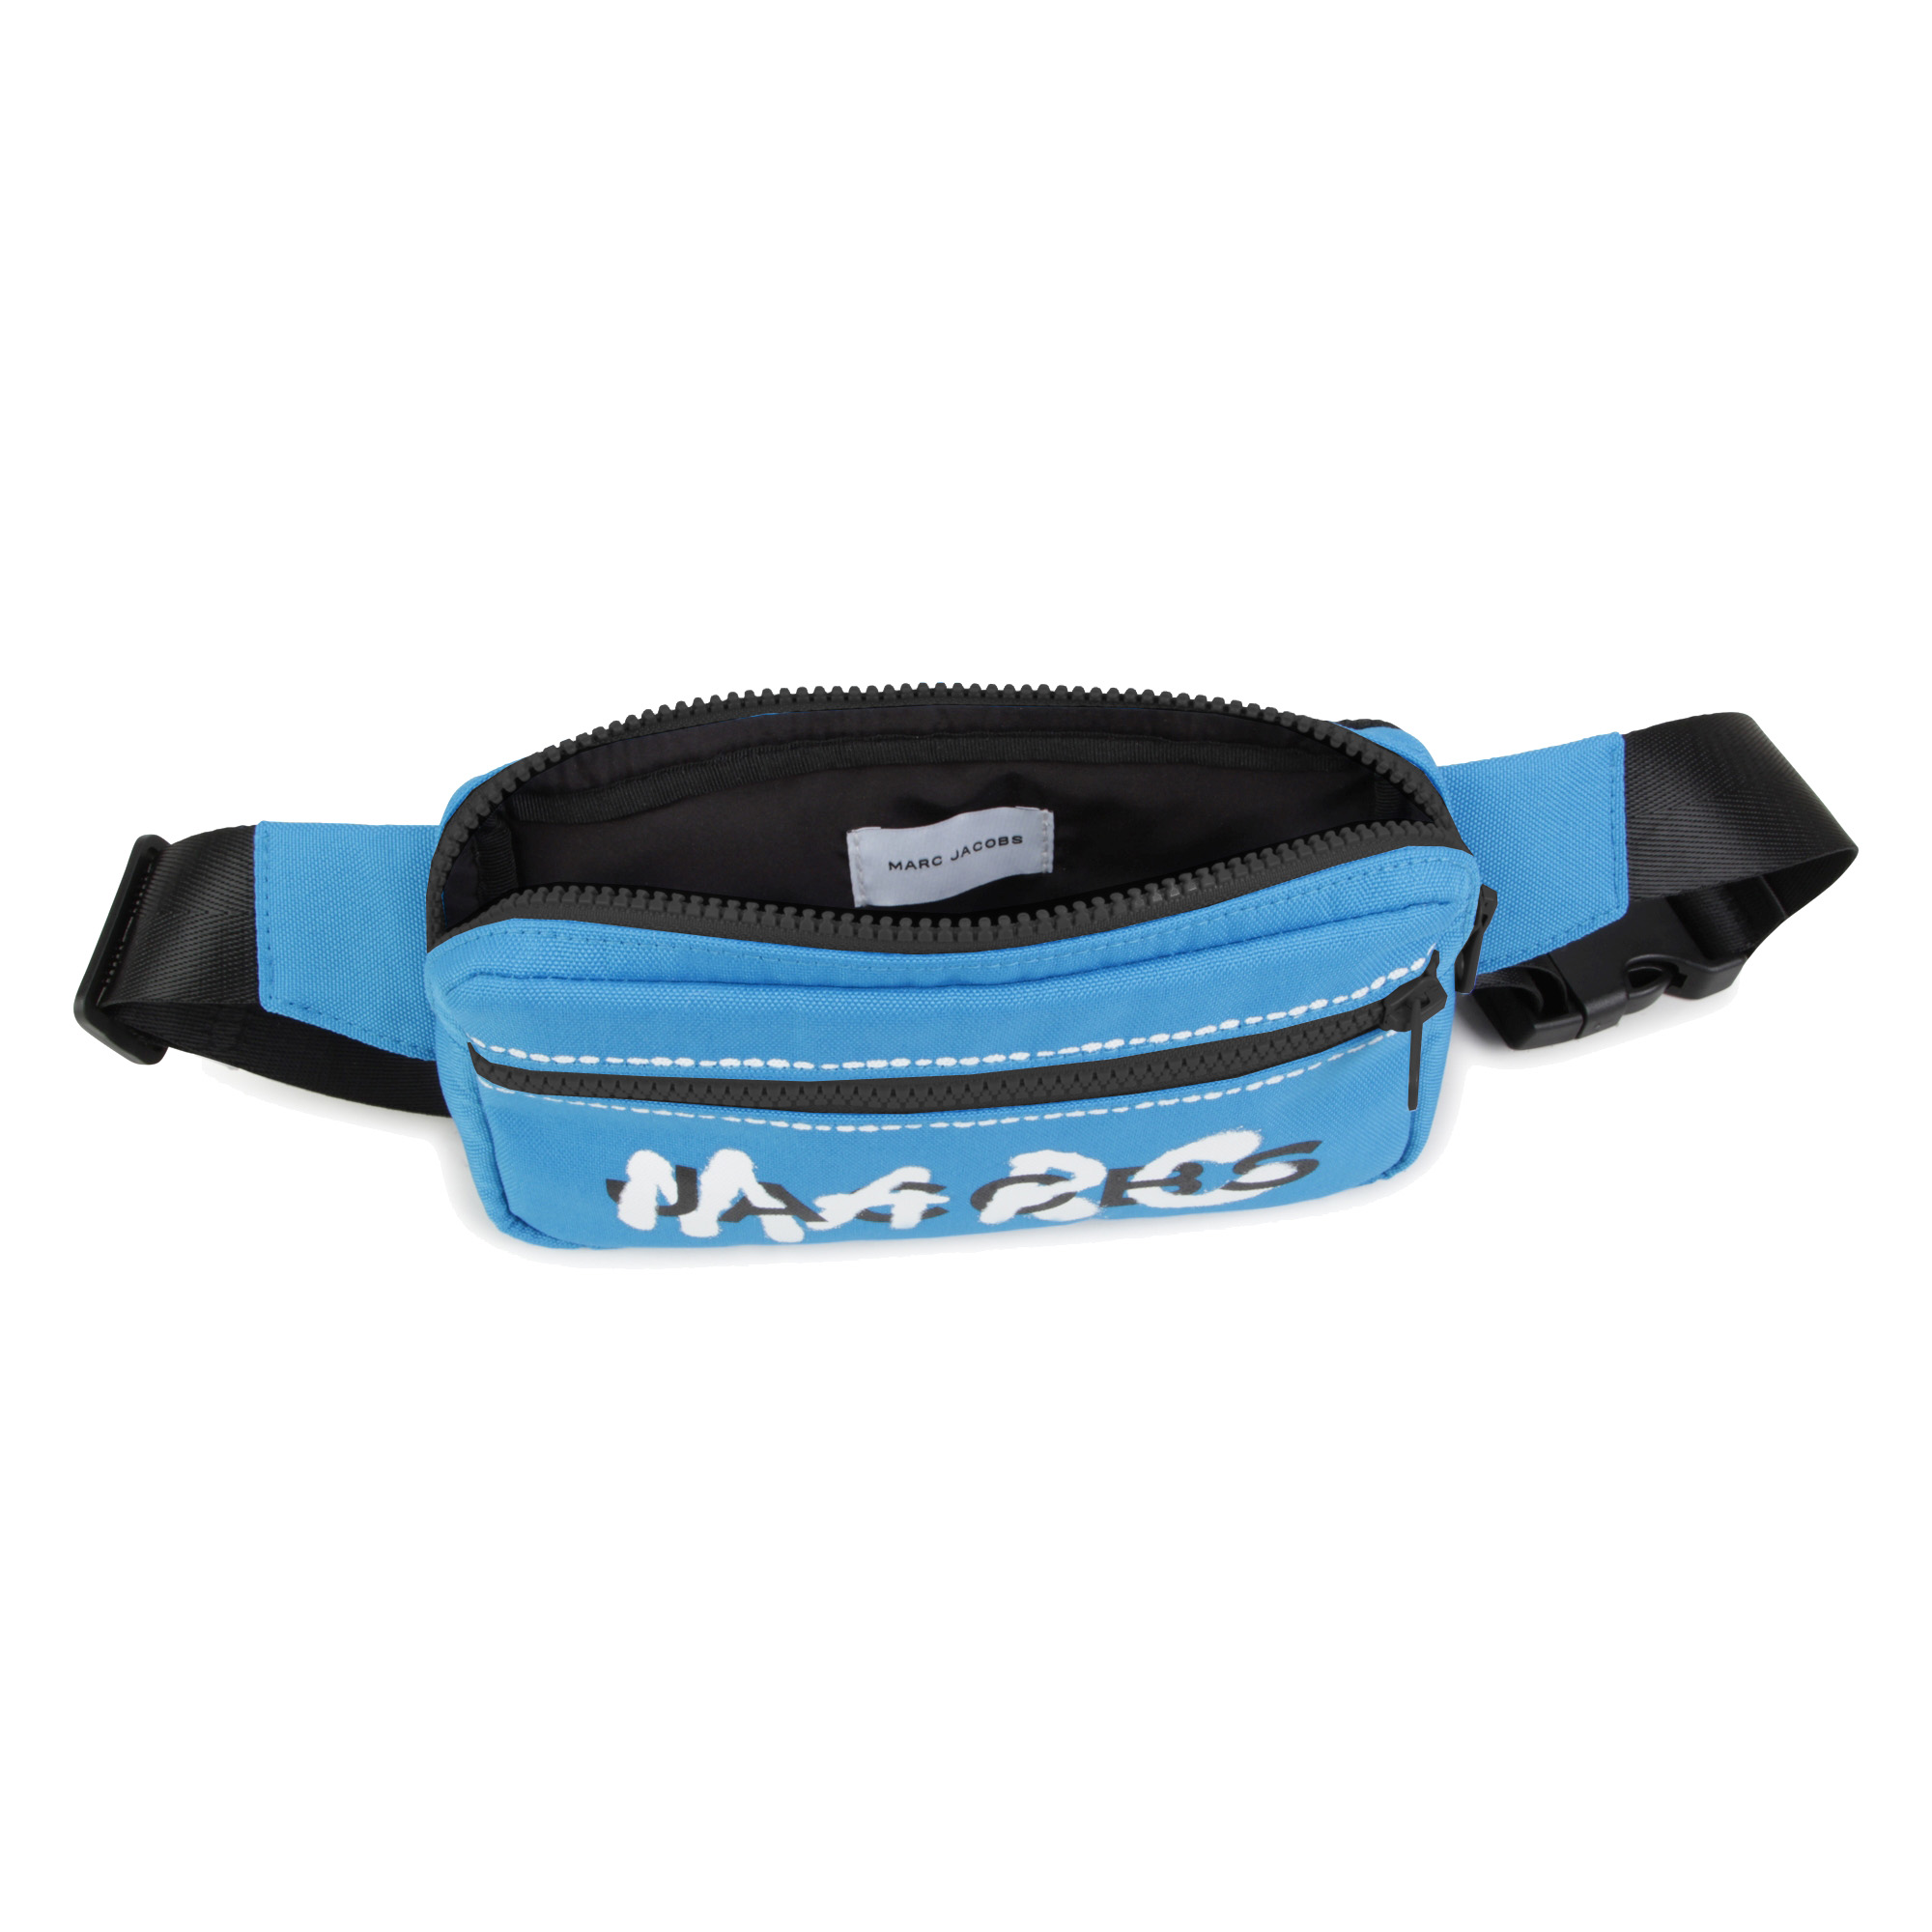 Decorative belt bag MARC JACOBS for BOY